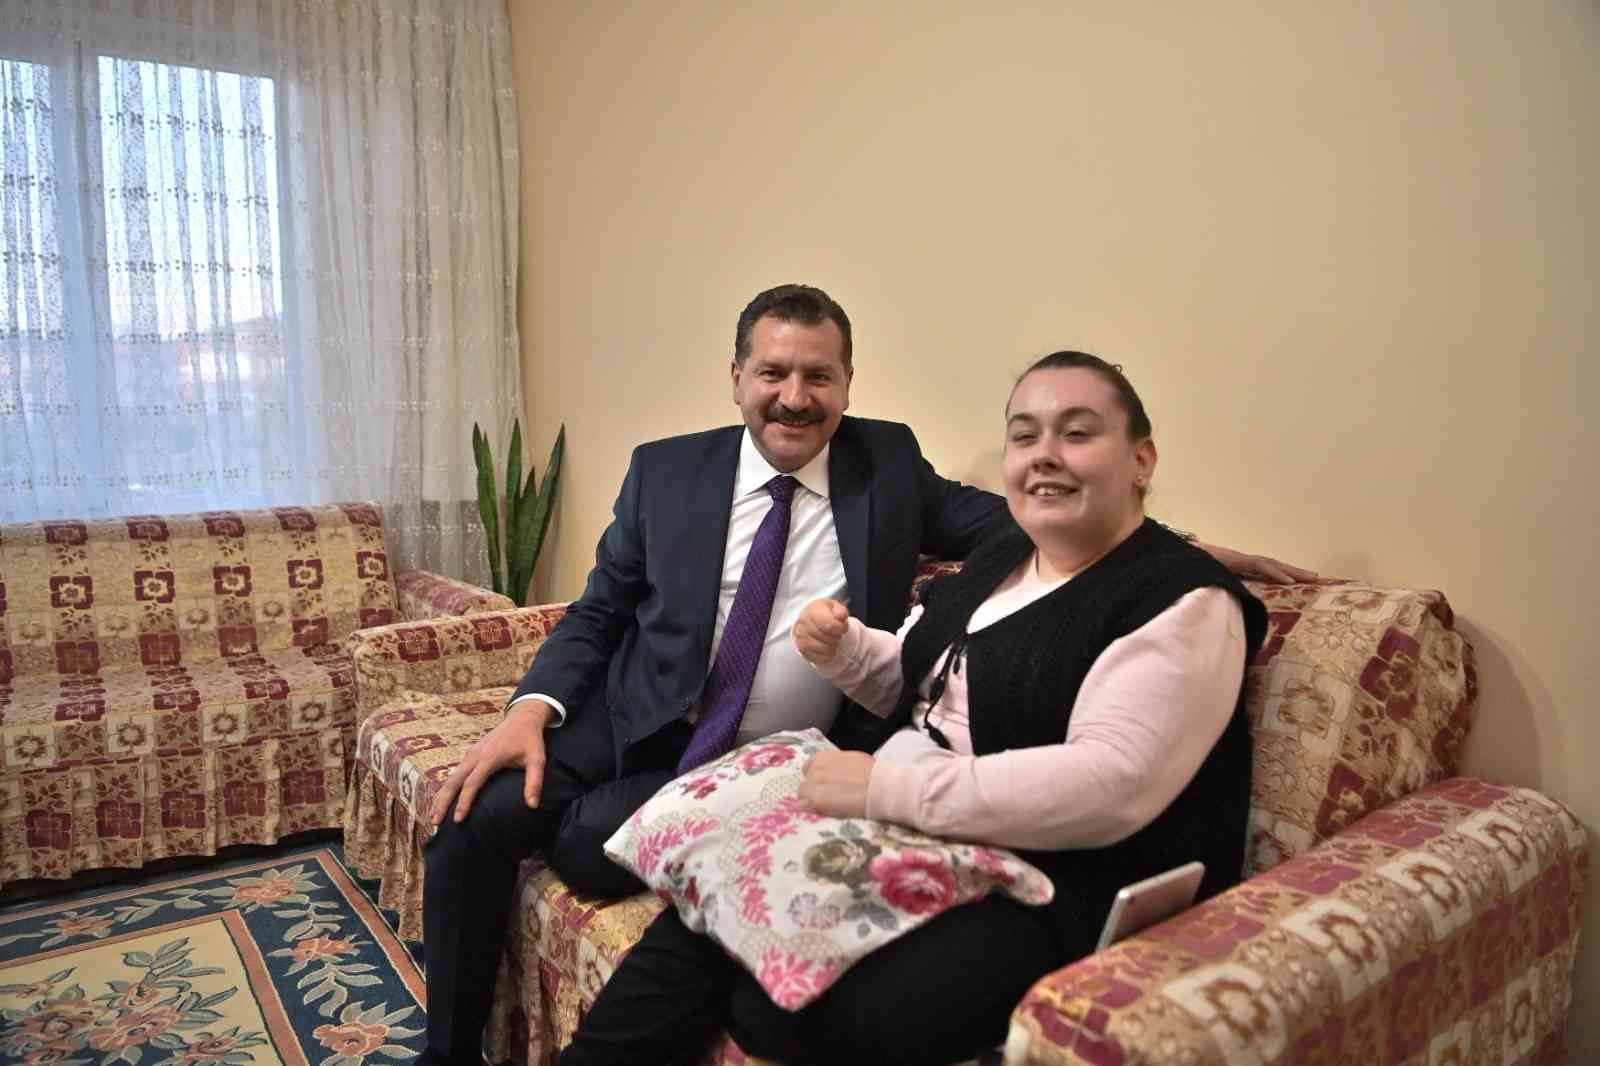 Balıkesir Büyükşehir Belediye Başkanı Yücel Yılmaz’ın evinde ziyaret ettiği kas hastası Kübra, eline mikrofon alıp kendi hayatını anlattı. Kübra ...